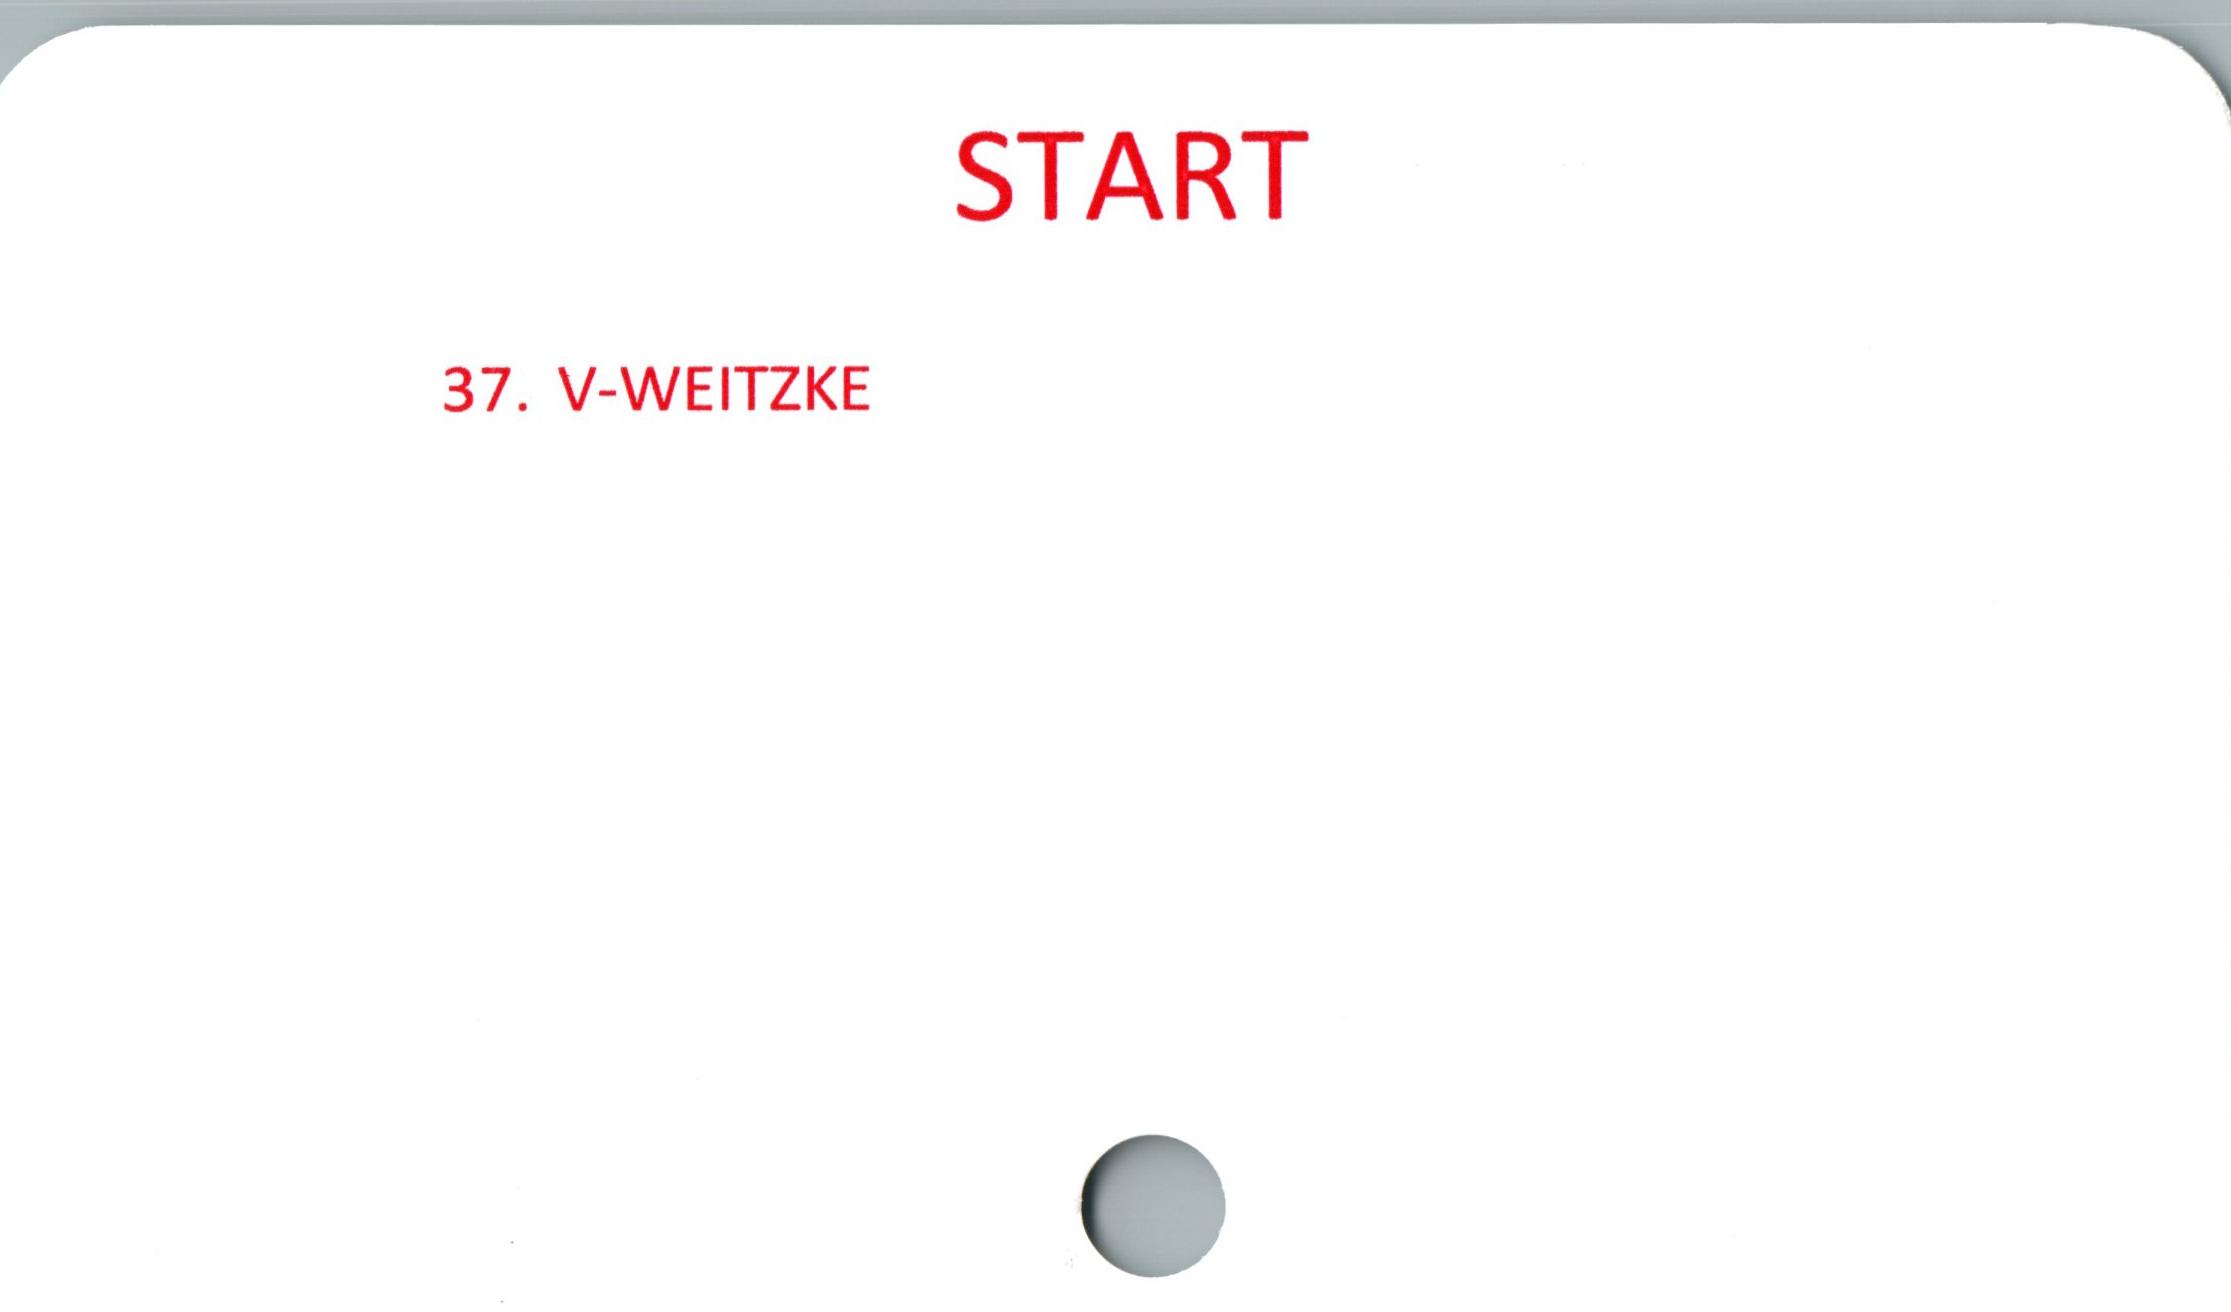  ﻿START



37. V-WEITZKE